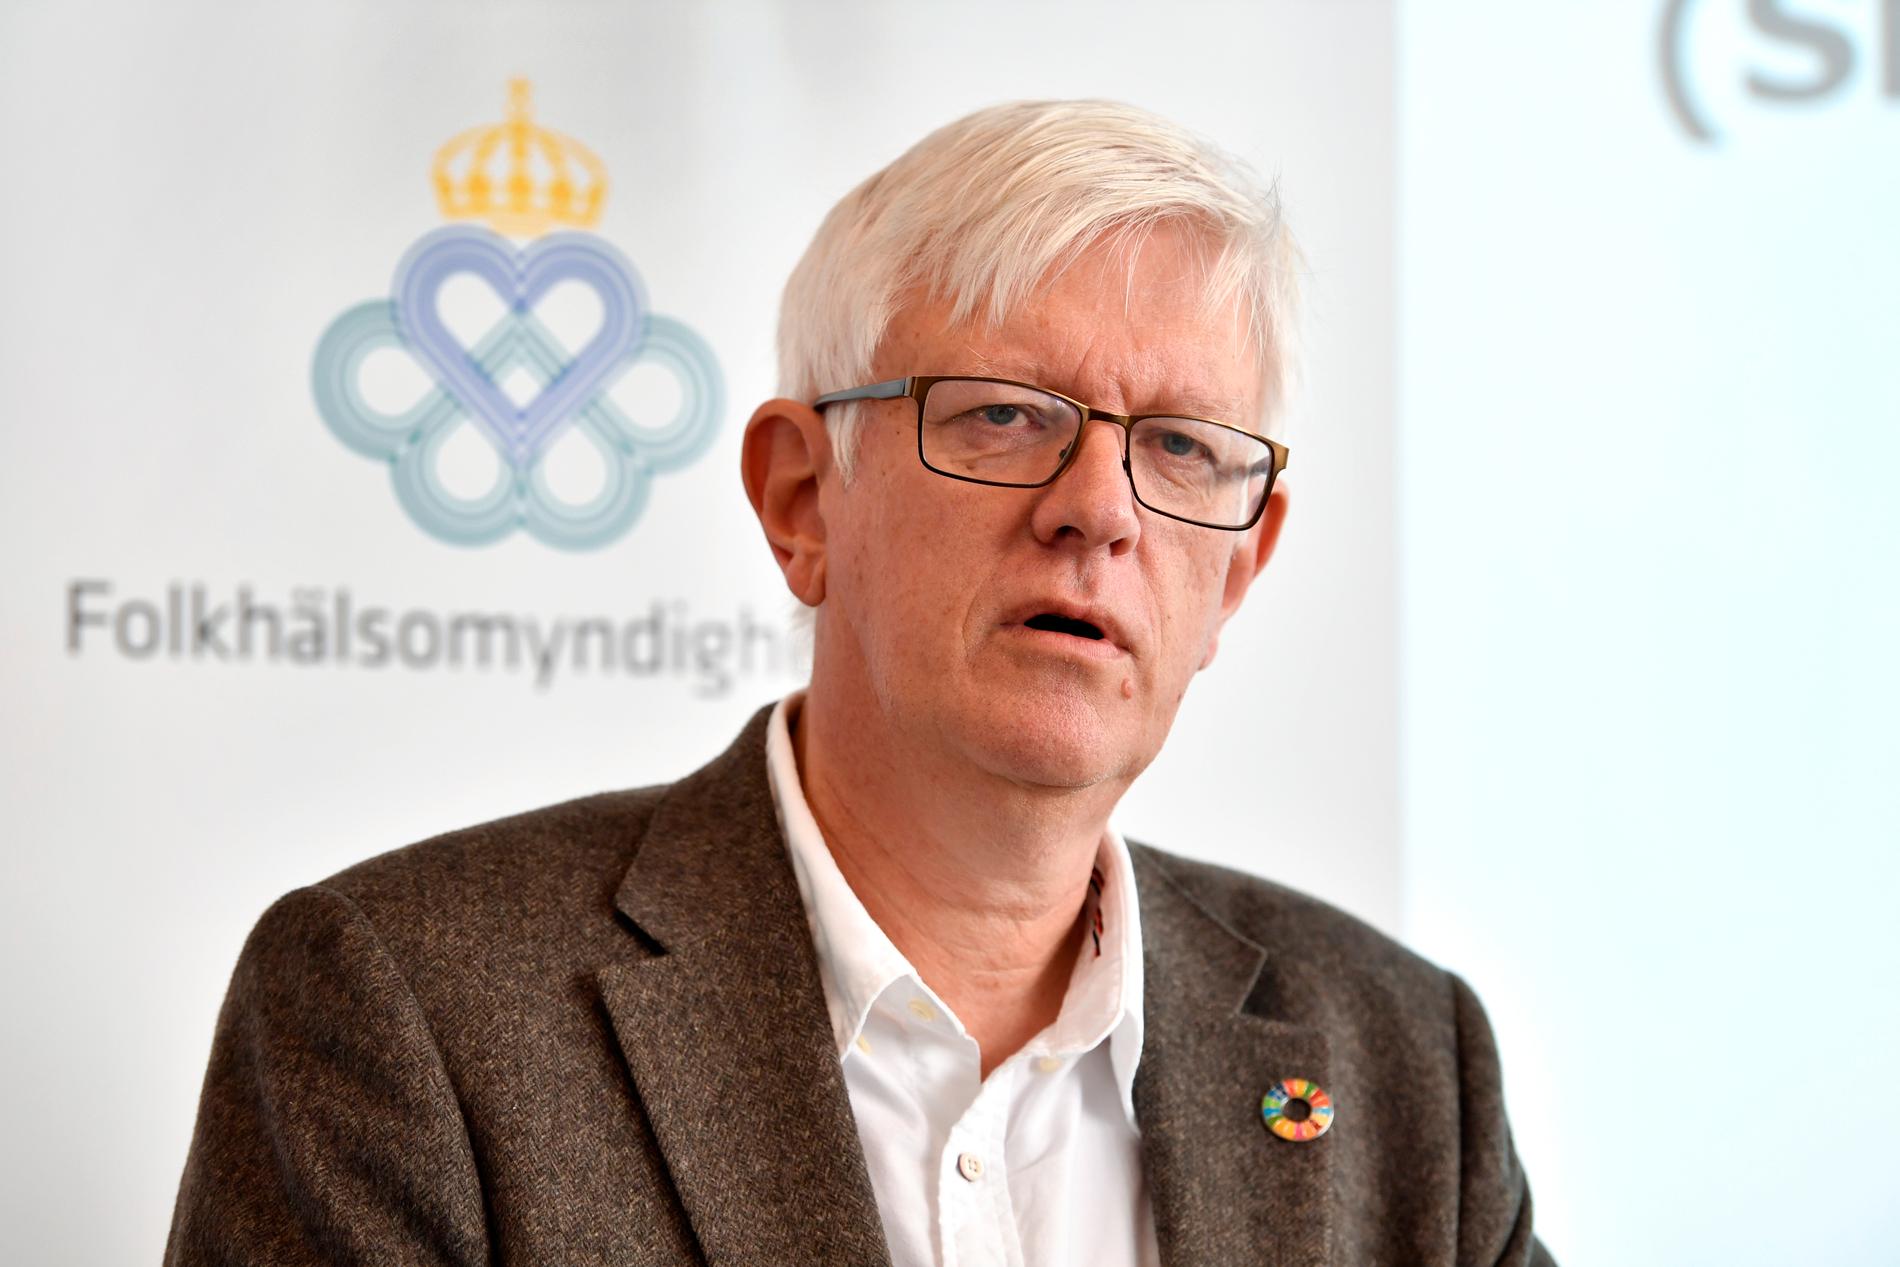 "De flyktingar som kommer till Sverige är som regel ganska friska och sedan blir hälsan påtagligt sämre", säger Johan Carlson, generaldirektör på Folkhälsomyndigheten. Arkivbild.